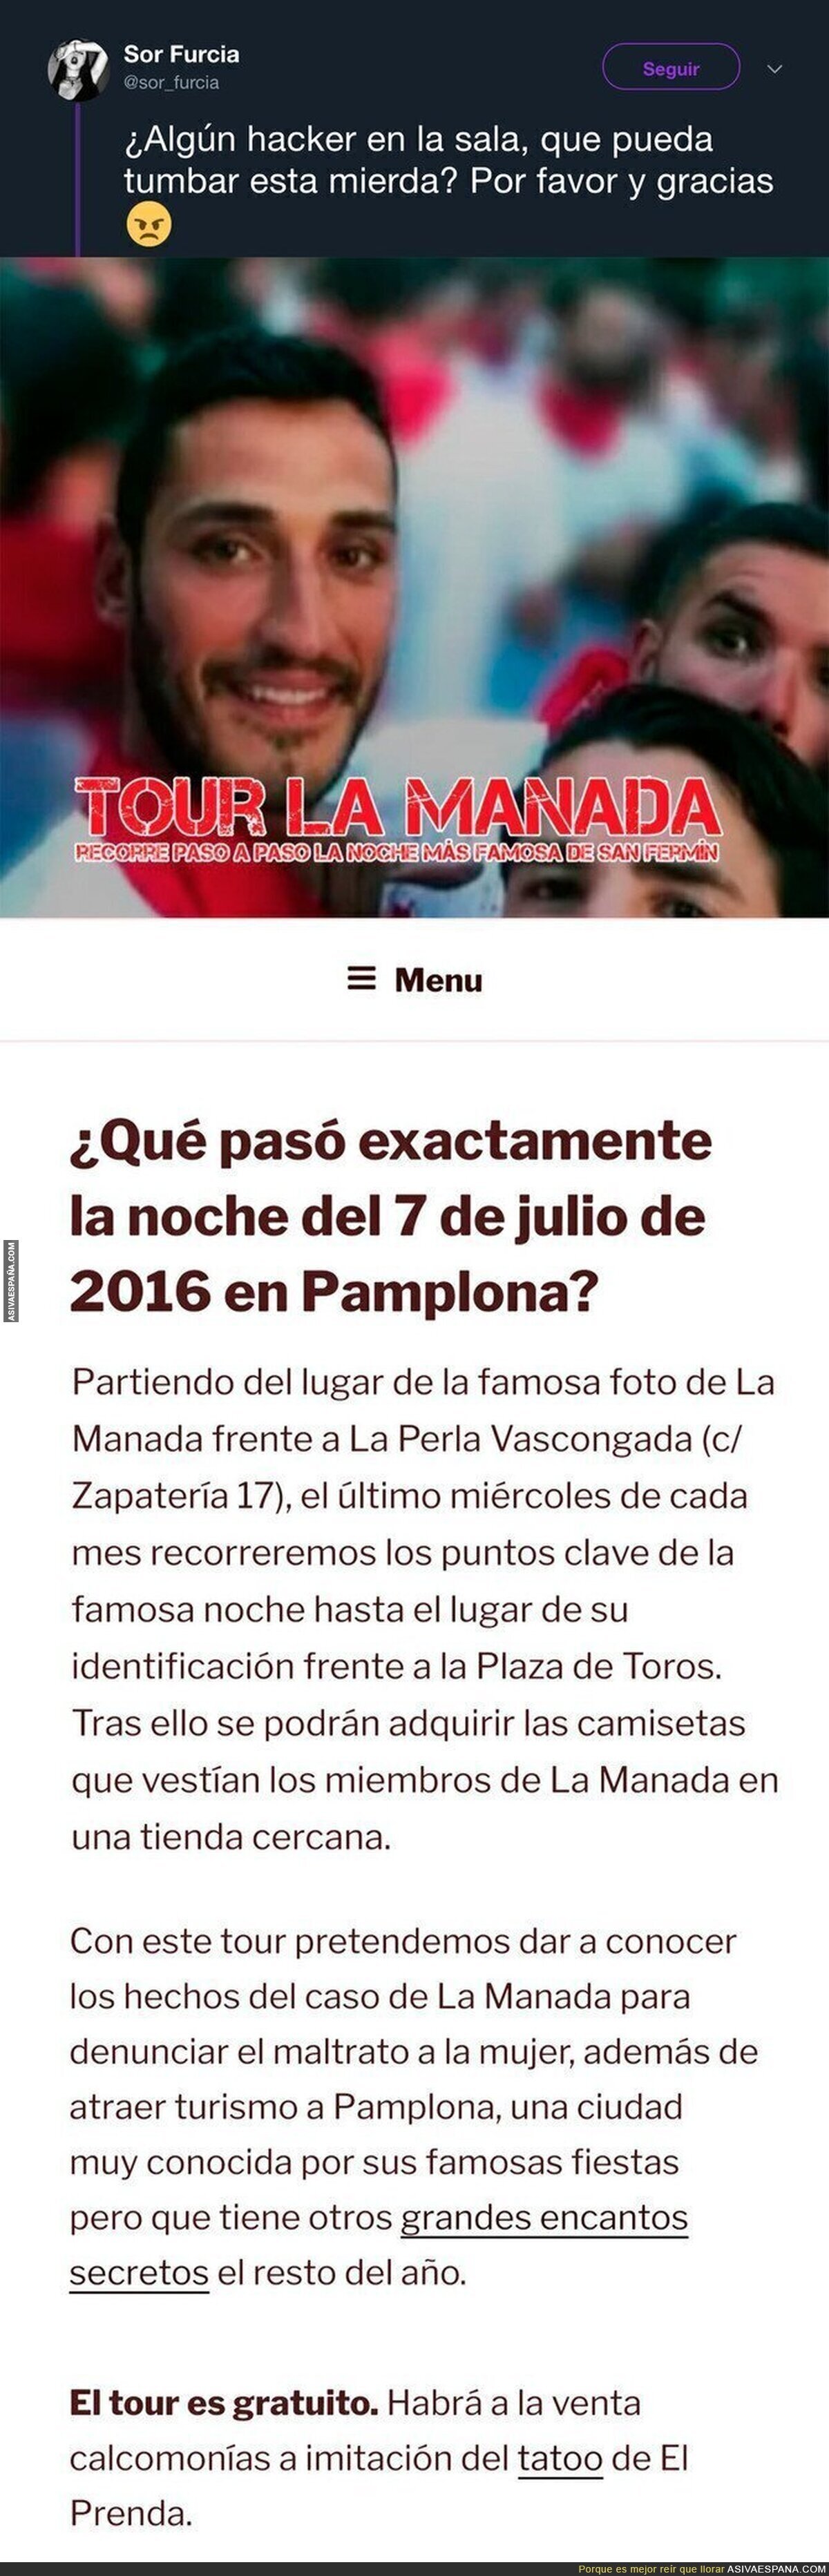 Crean una web con información para hacer un tour por la ruta que hizo La Manada el día de la violación en San Fermín